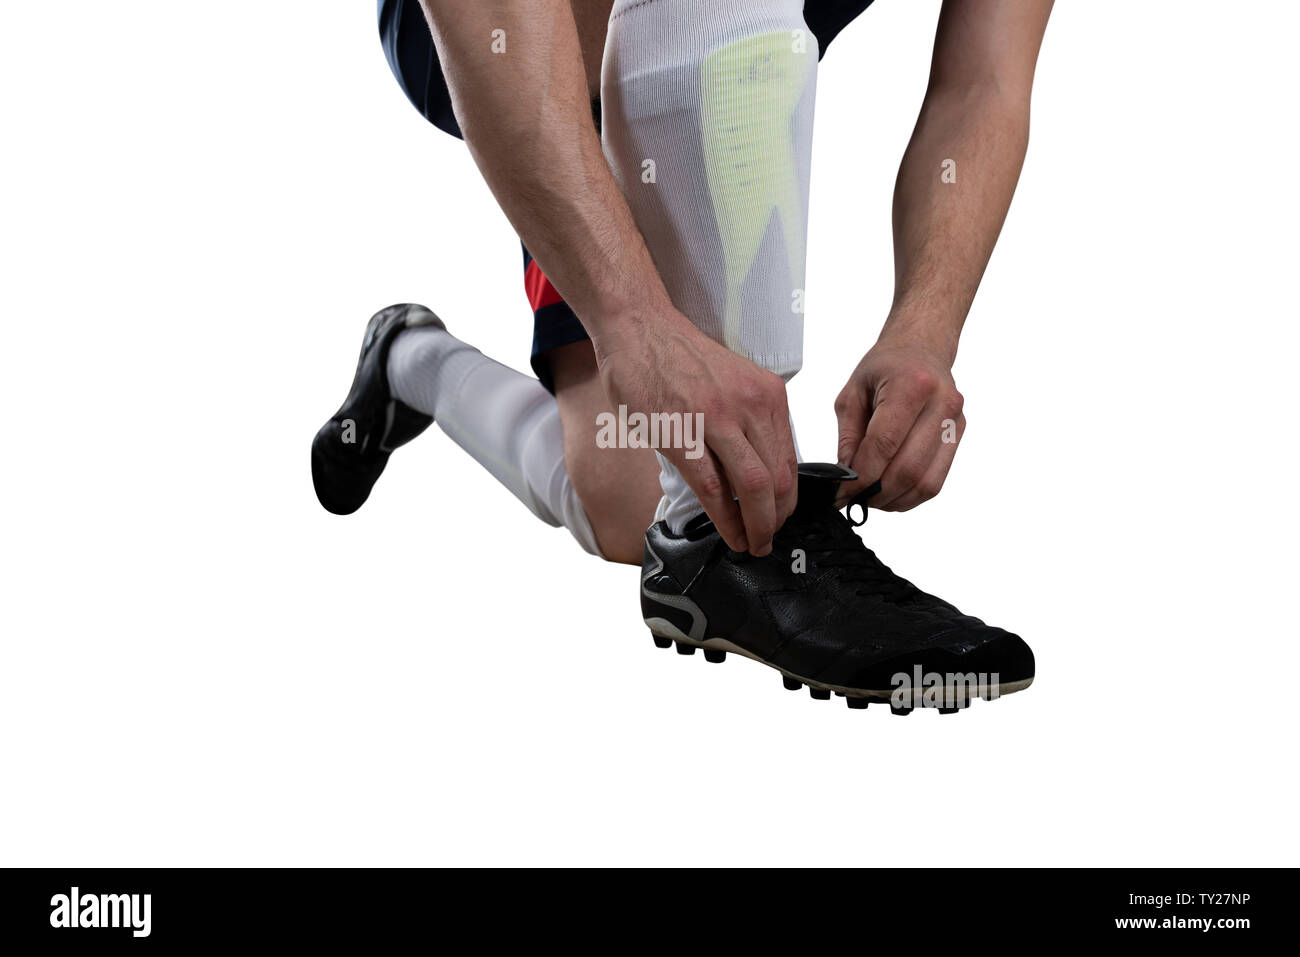 Giocatore di calcio regolare le sue scarpe prima della partita. Isolato su sfondo bianco Foto Stock